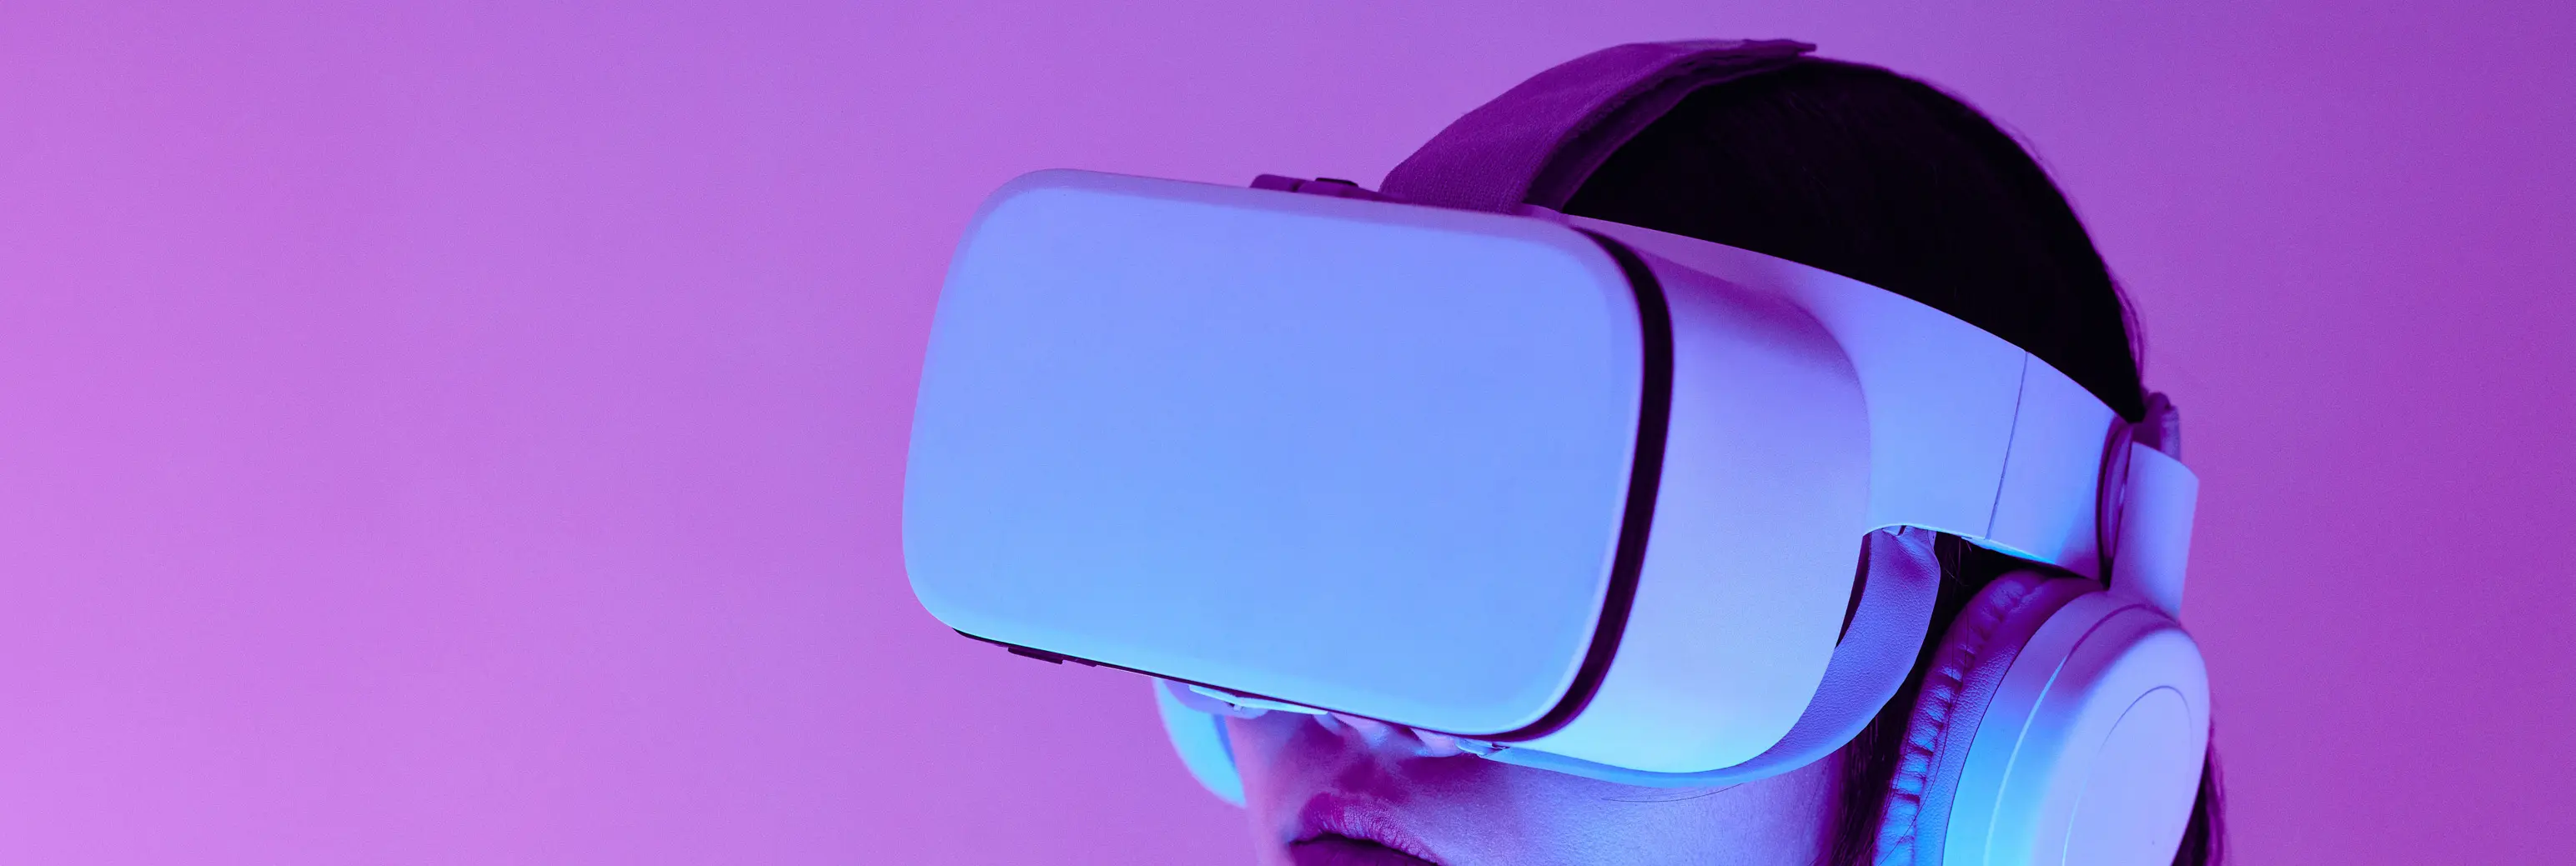 Printemps numérique casque réalité virtuelle